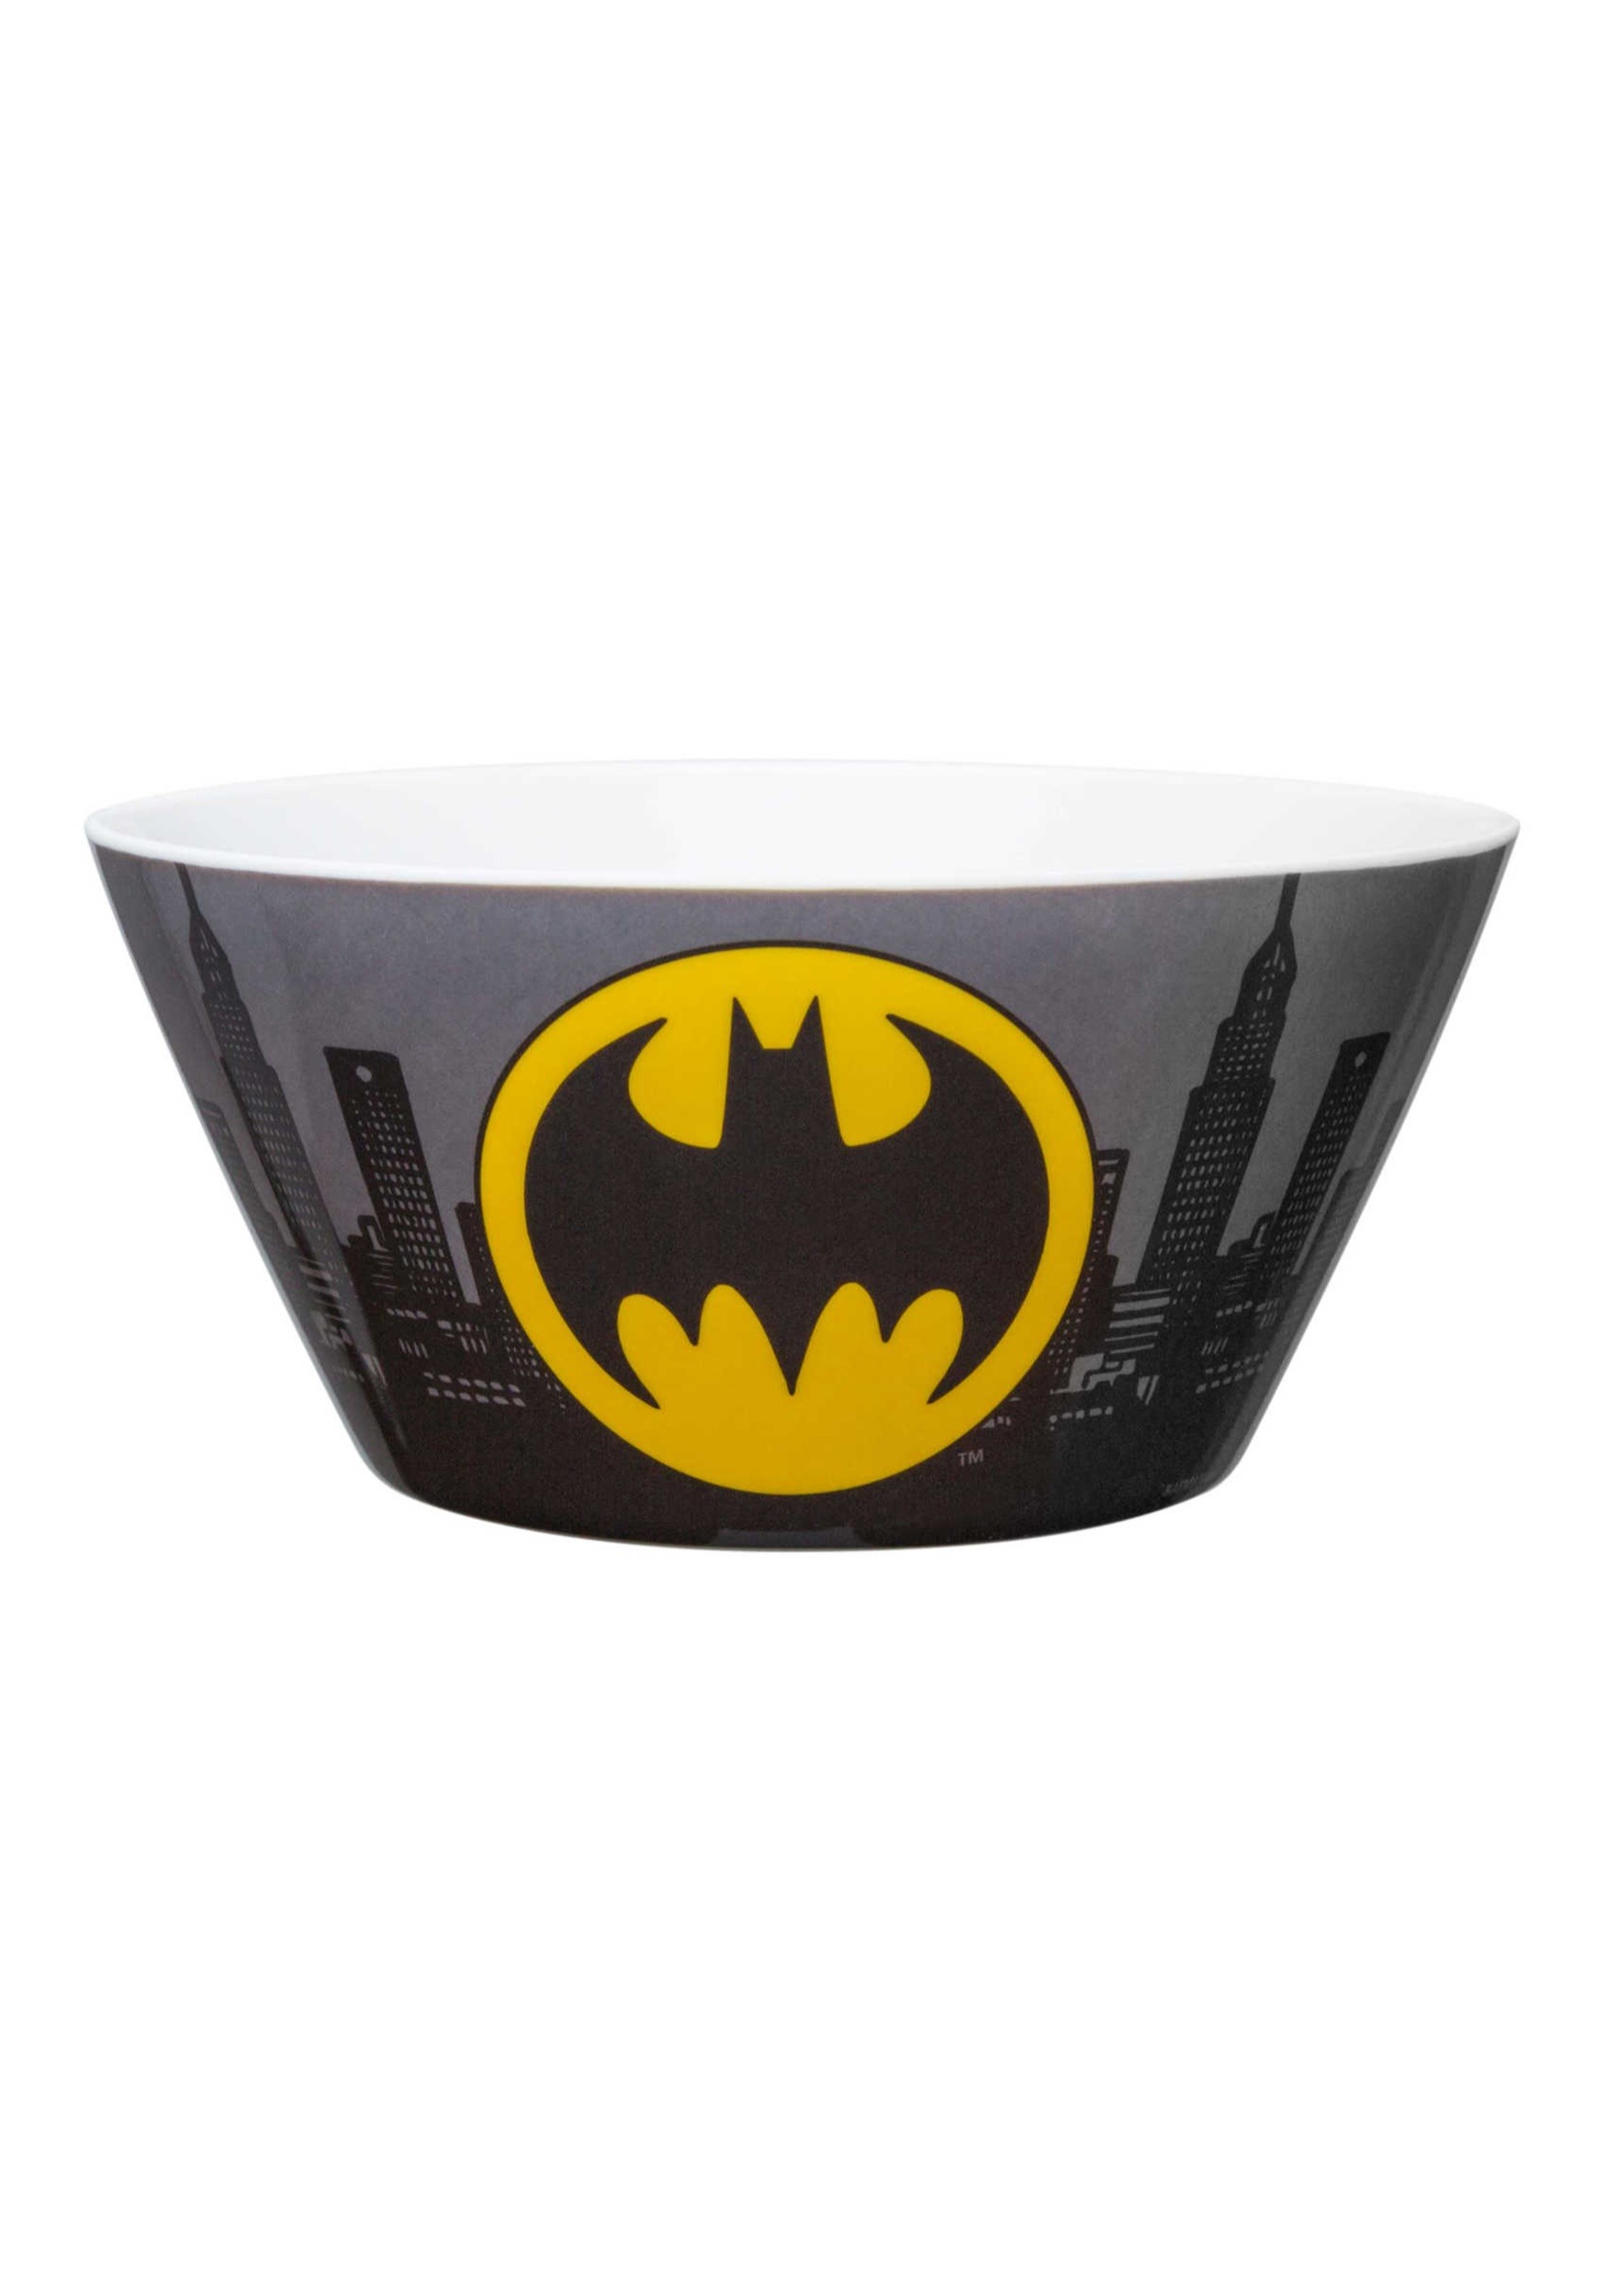 DC Comics BATMAN Kids Plastic Bowls Set of 4 NEW